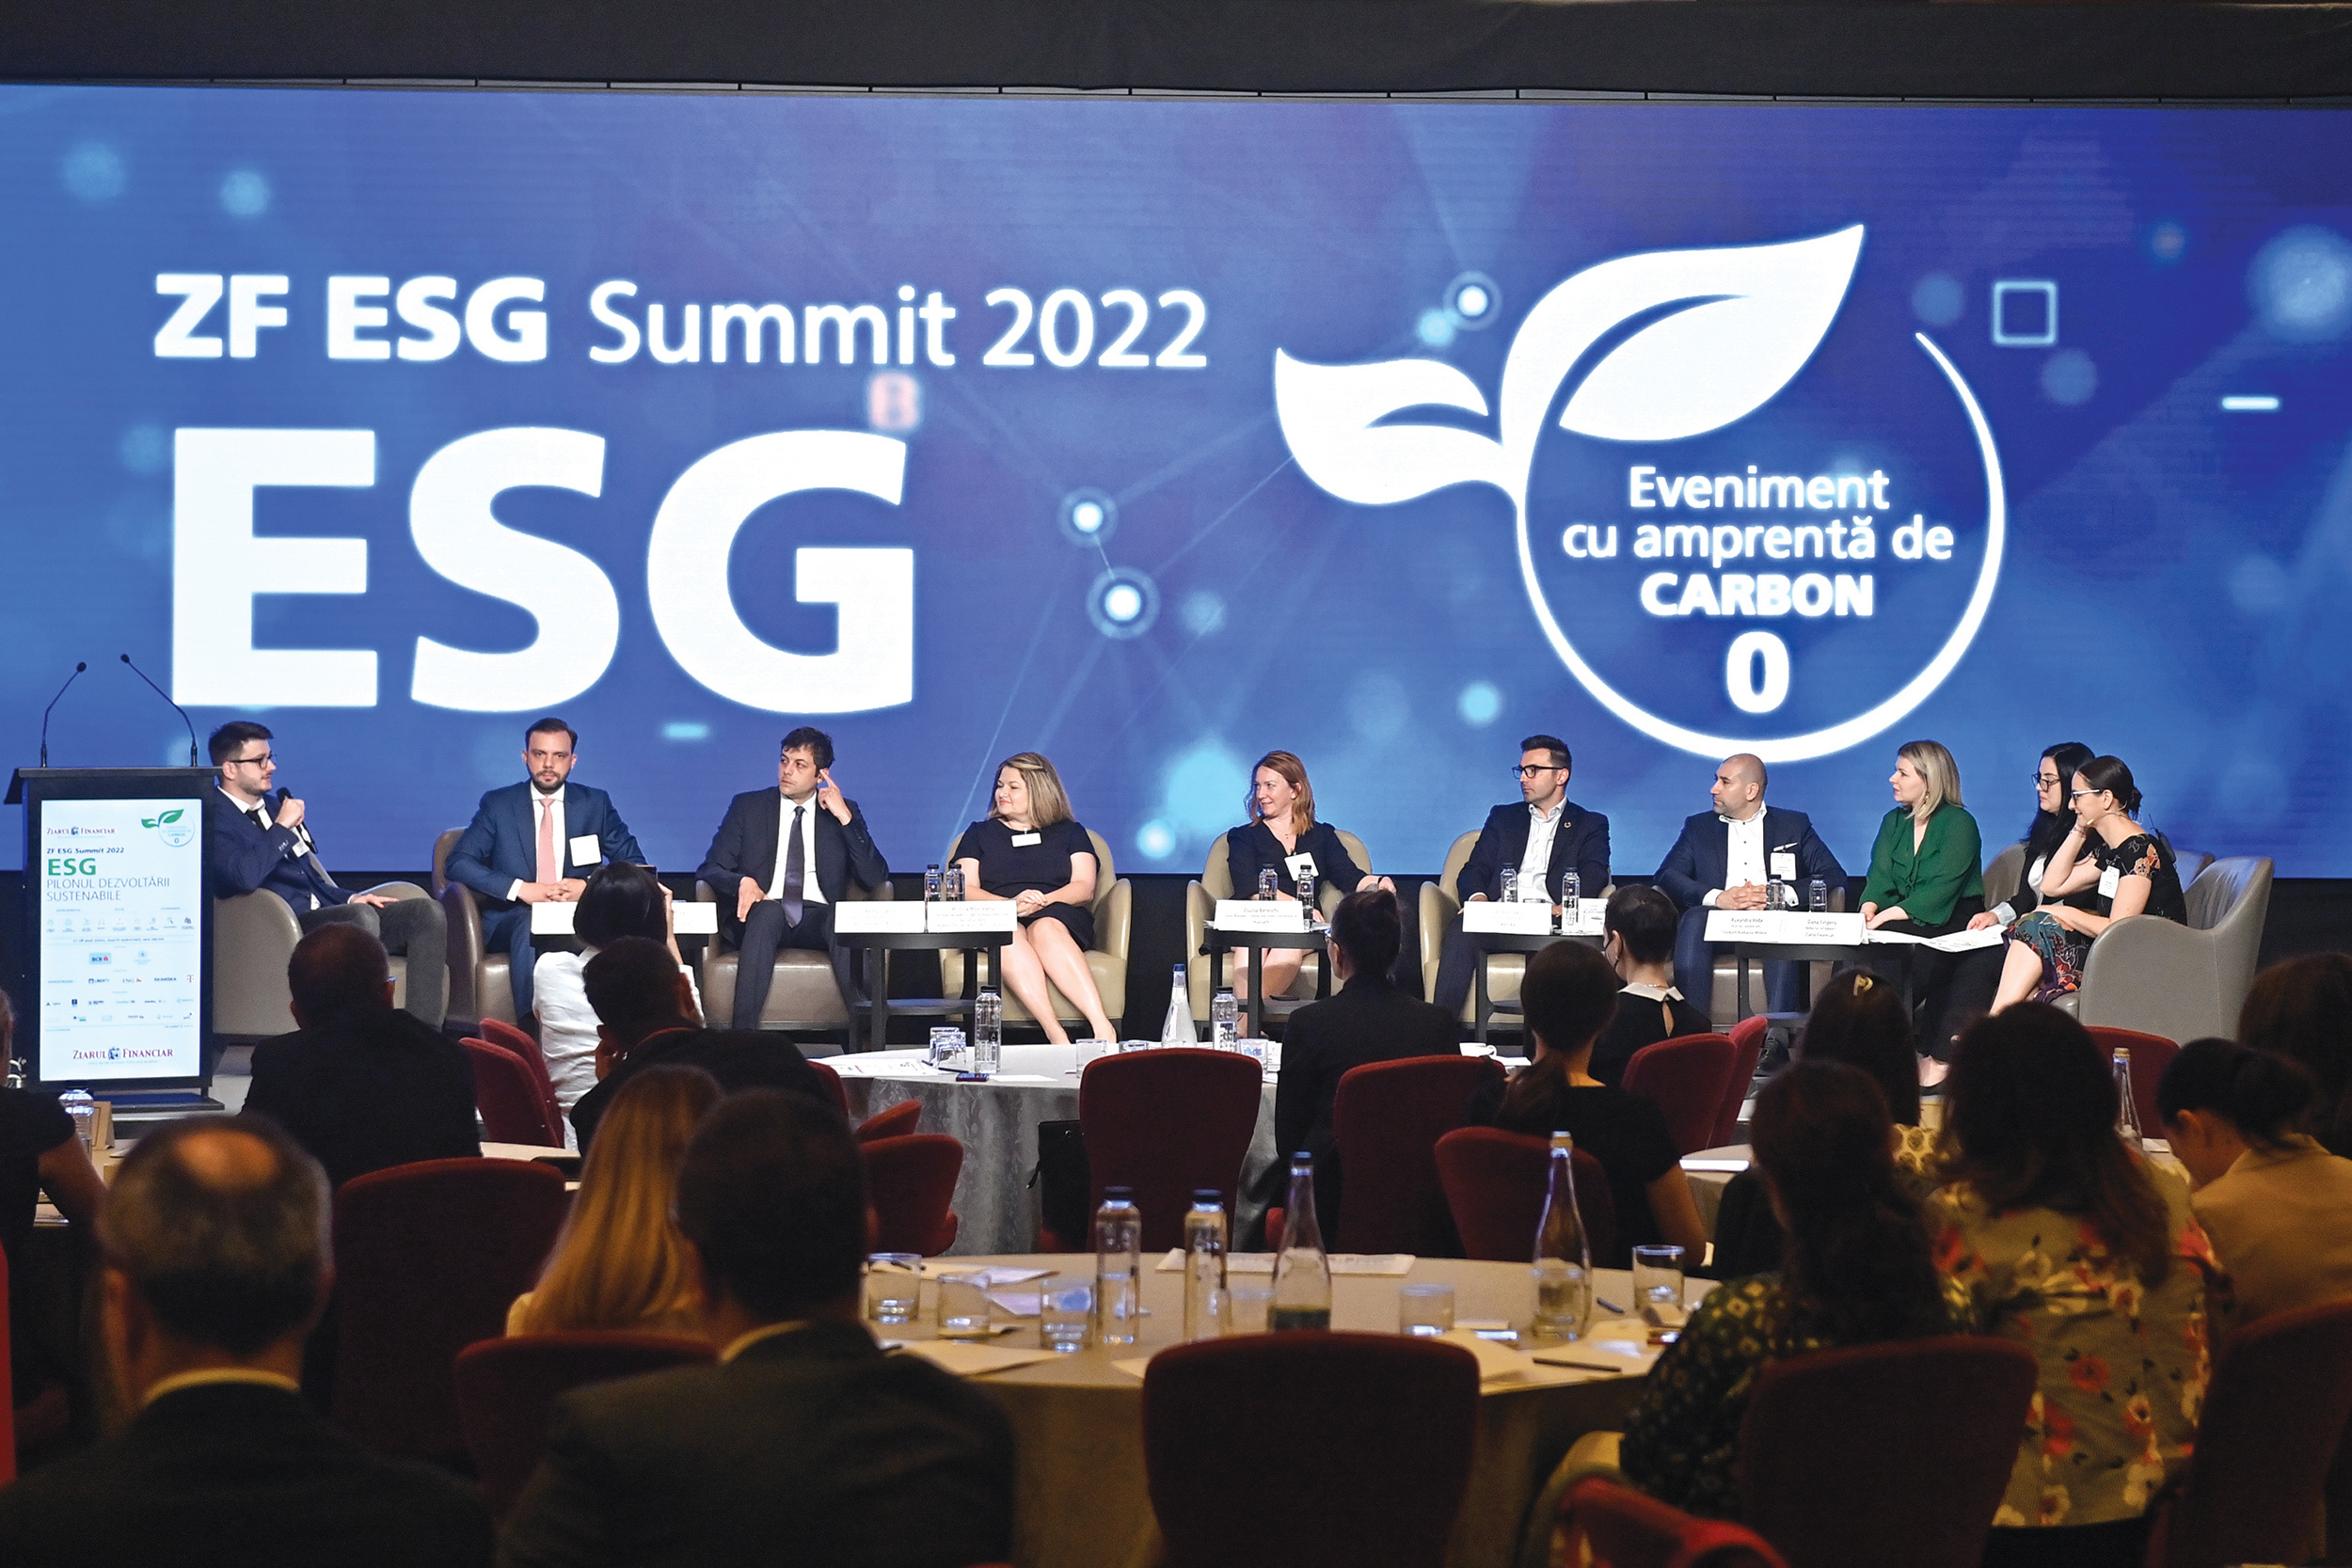 ZF ESG Summit 2022: ESG, pilonul dezvoltării sustenabile. Principiile de ESG oferă companiilor accesul la pieţe noi şi la o finanţare mai facilă. Educaţia este un punct cheie în a face lucrurile într-un mod sustenabil